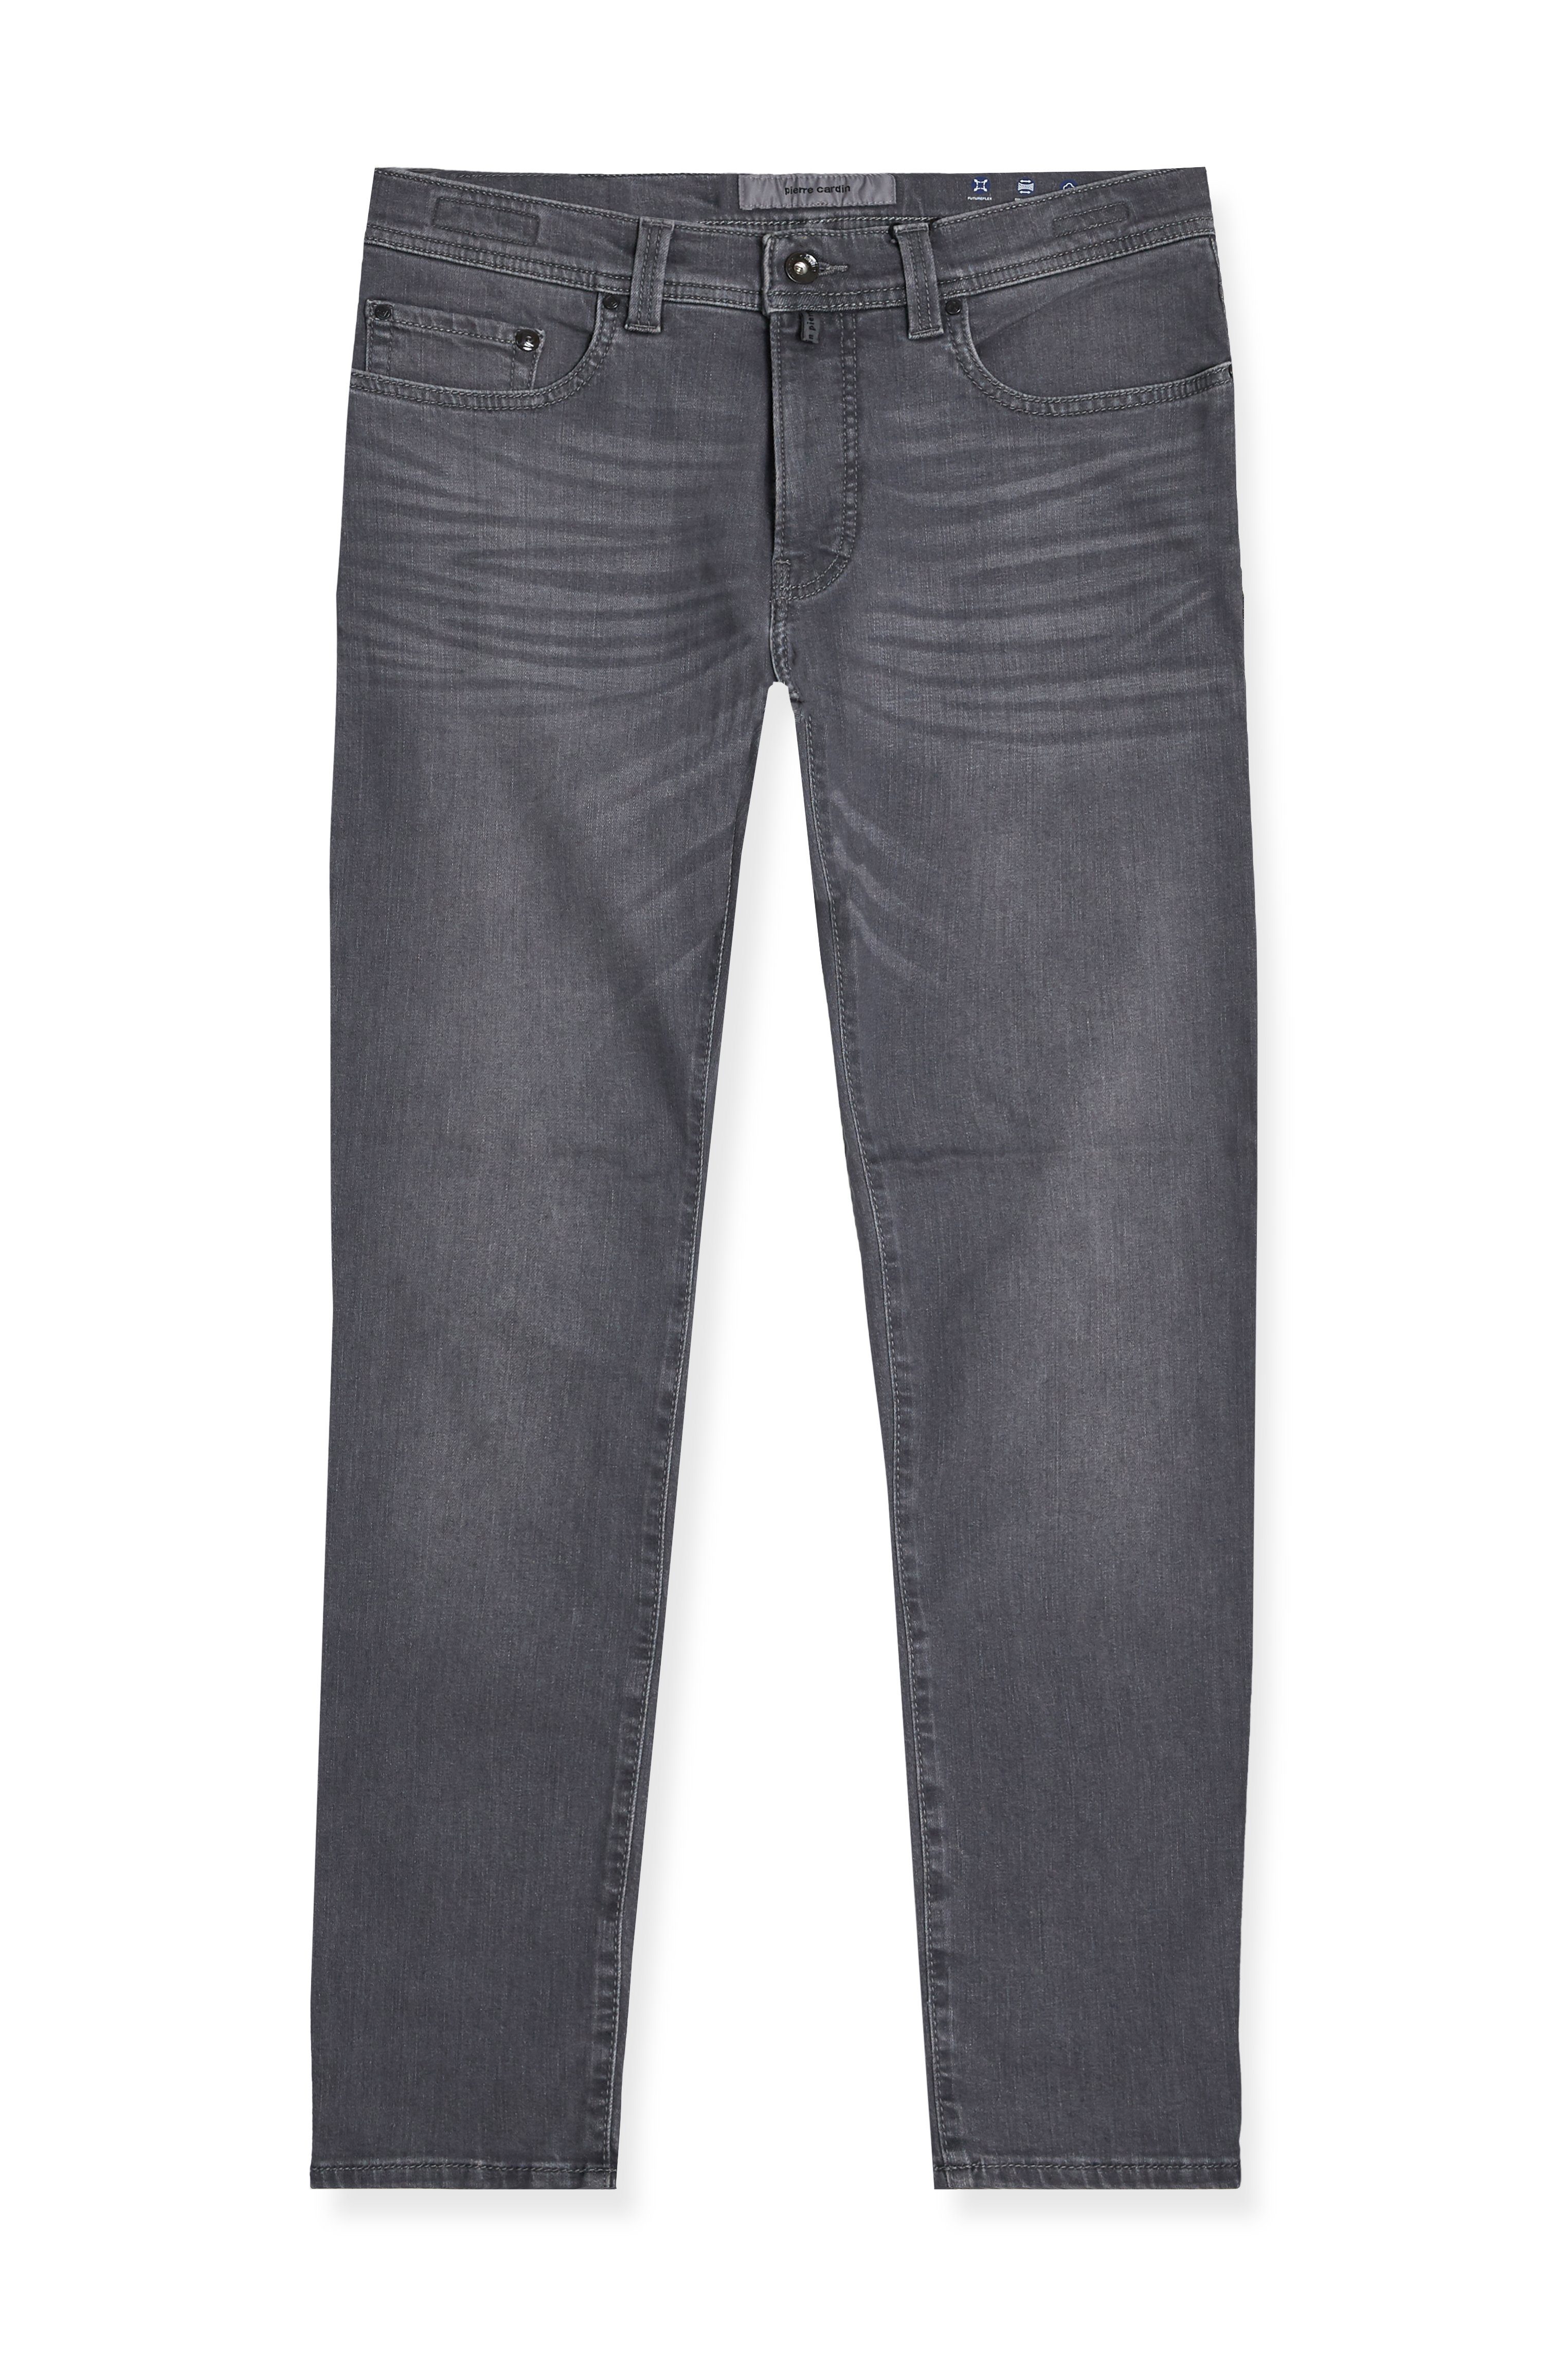 Pierre Cardin 5-Pocket-Jeans Pierre Cardin Herren Jeans Lyon Futureflex - grey (1-tlg)